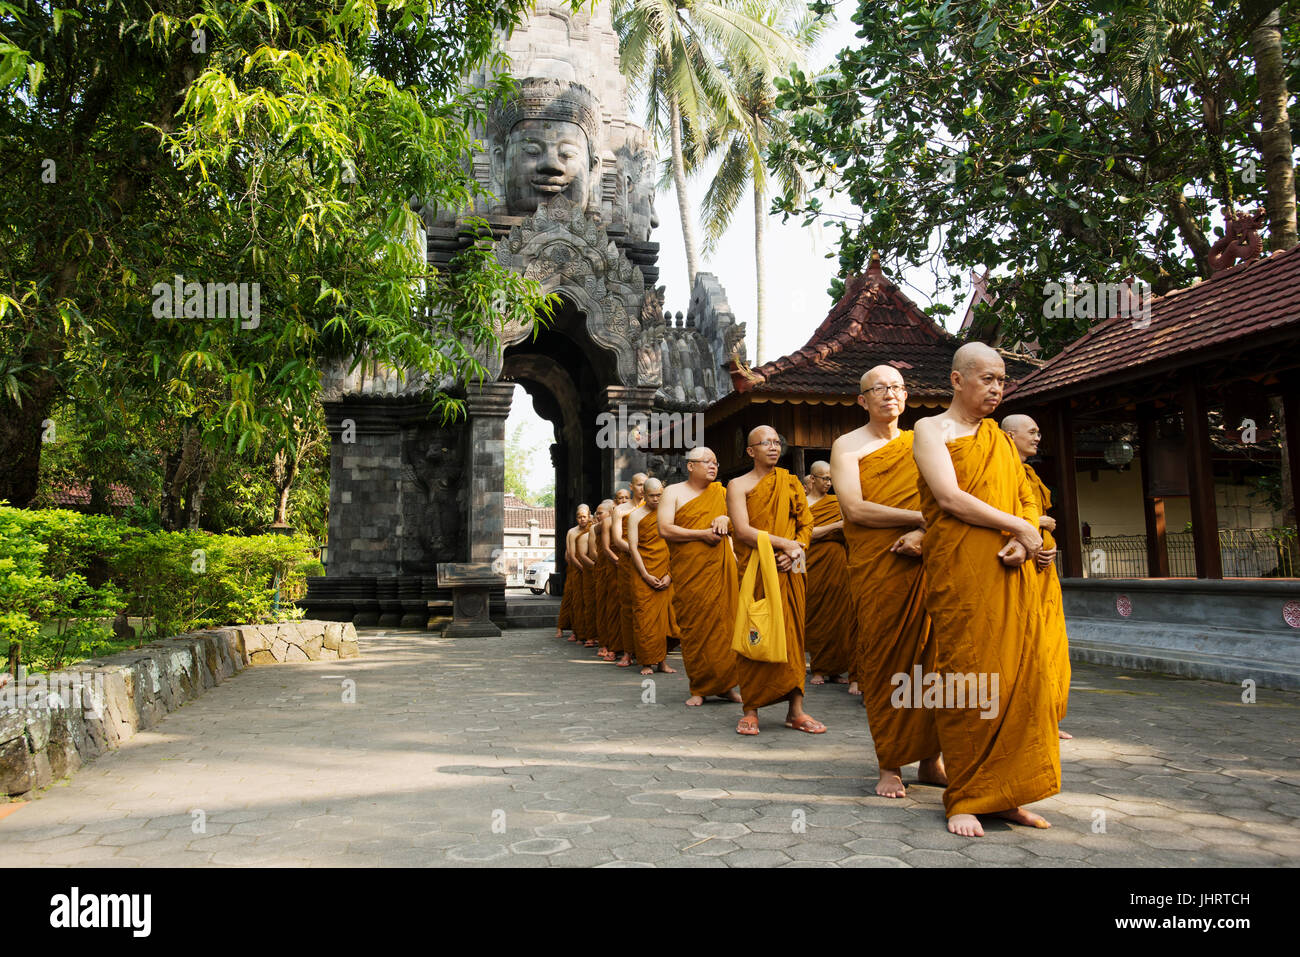 Monks in Mendut Buddhist Monastery, Yogyakarta Java Indonesia. Stock Photo